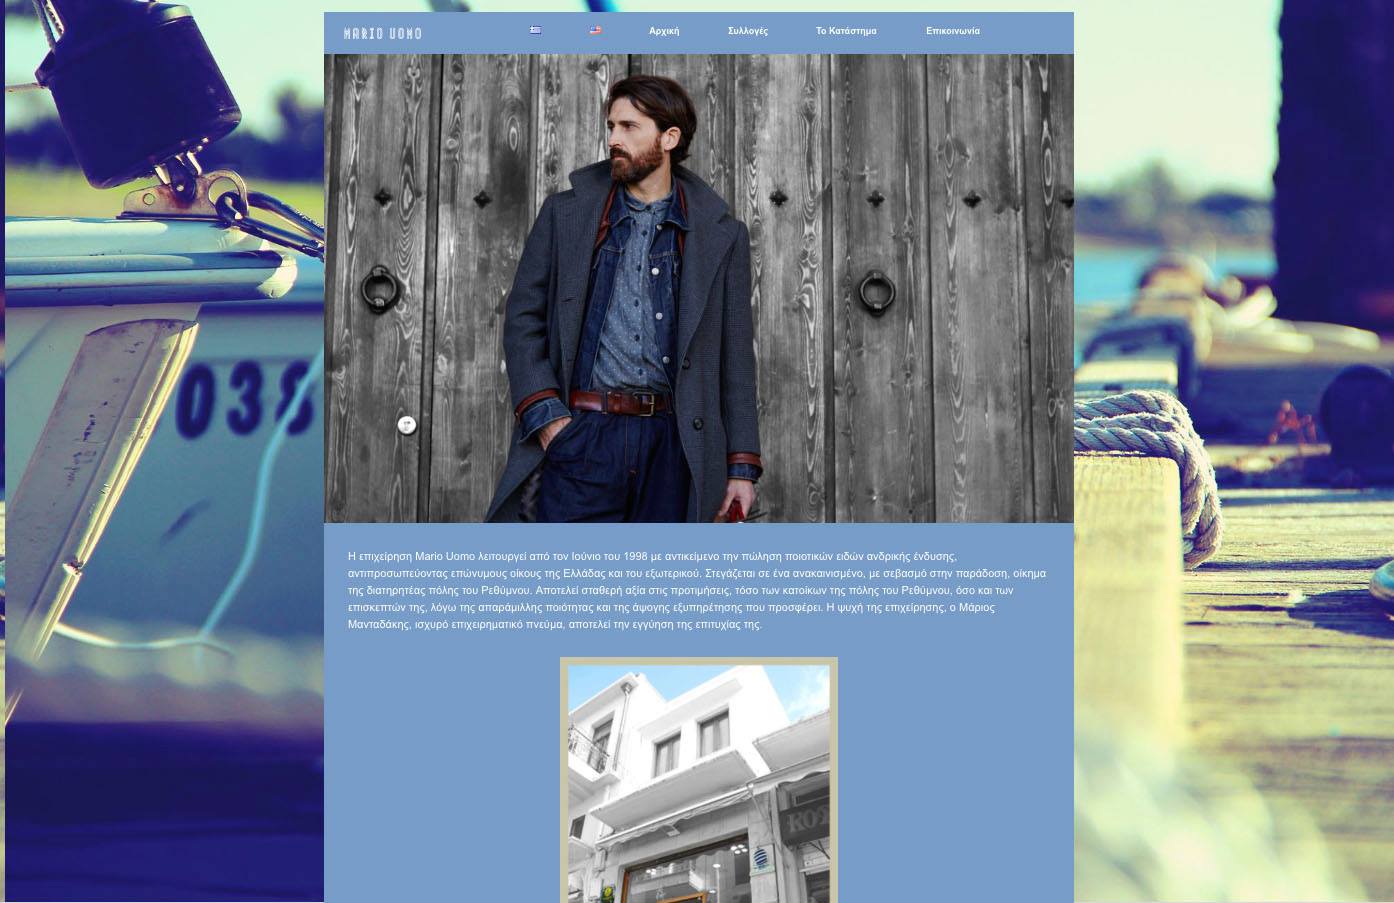 Mario Uomo website home page